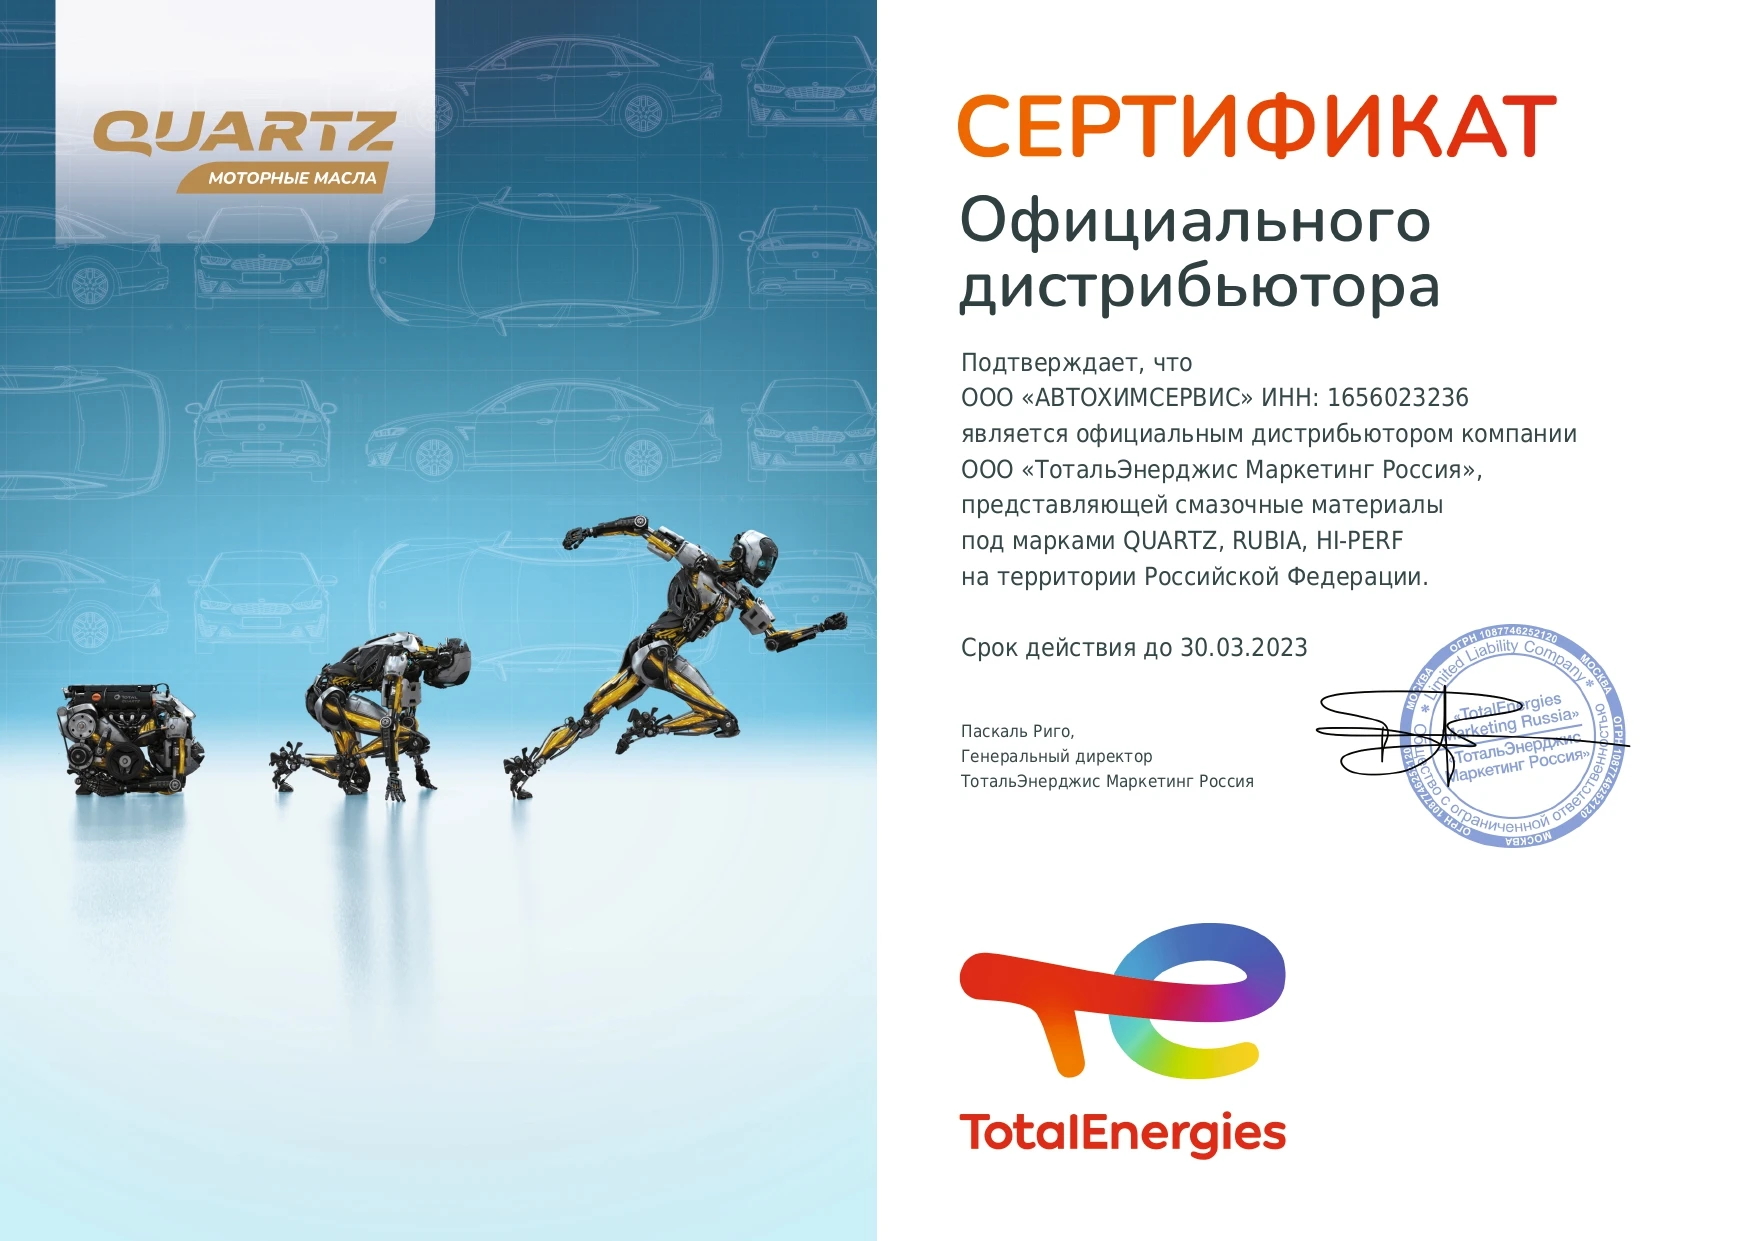 Сертификат ТотальЭнерджис Маркетинг Россия